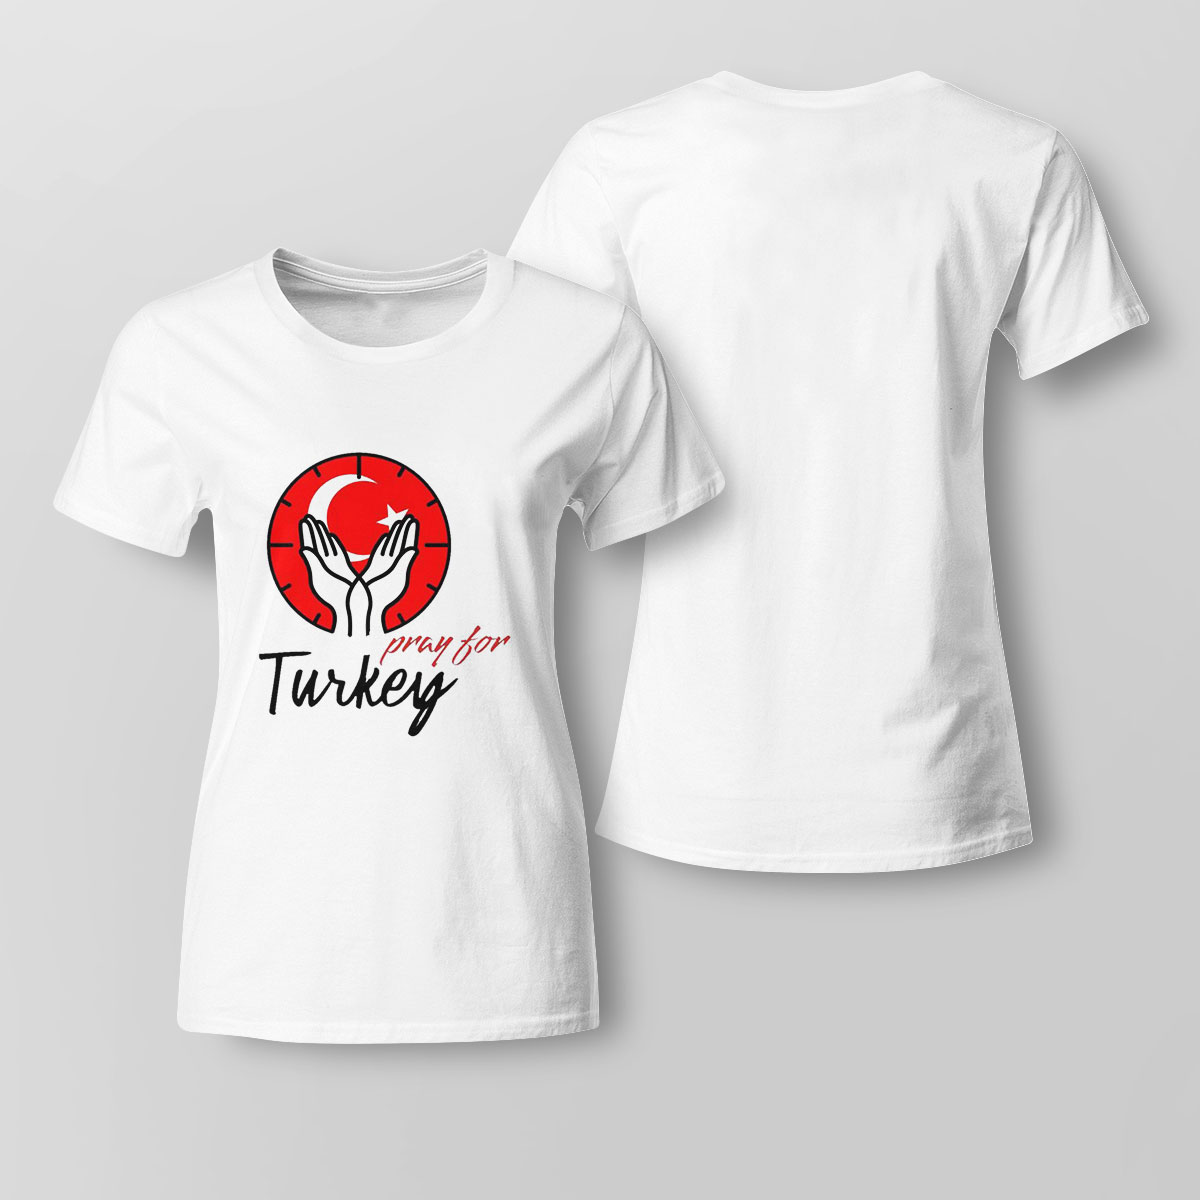 Pray For Turkey Earthquake Shirt Ladies Tee